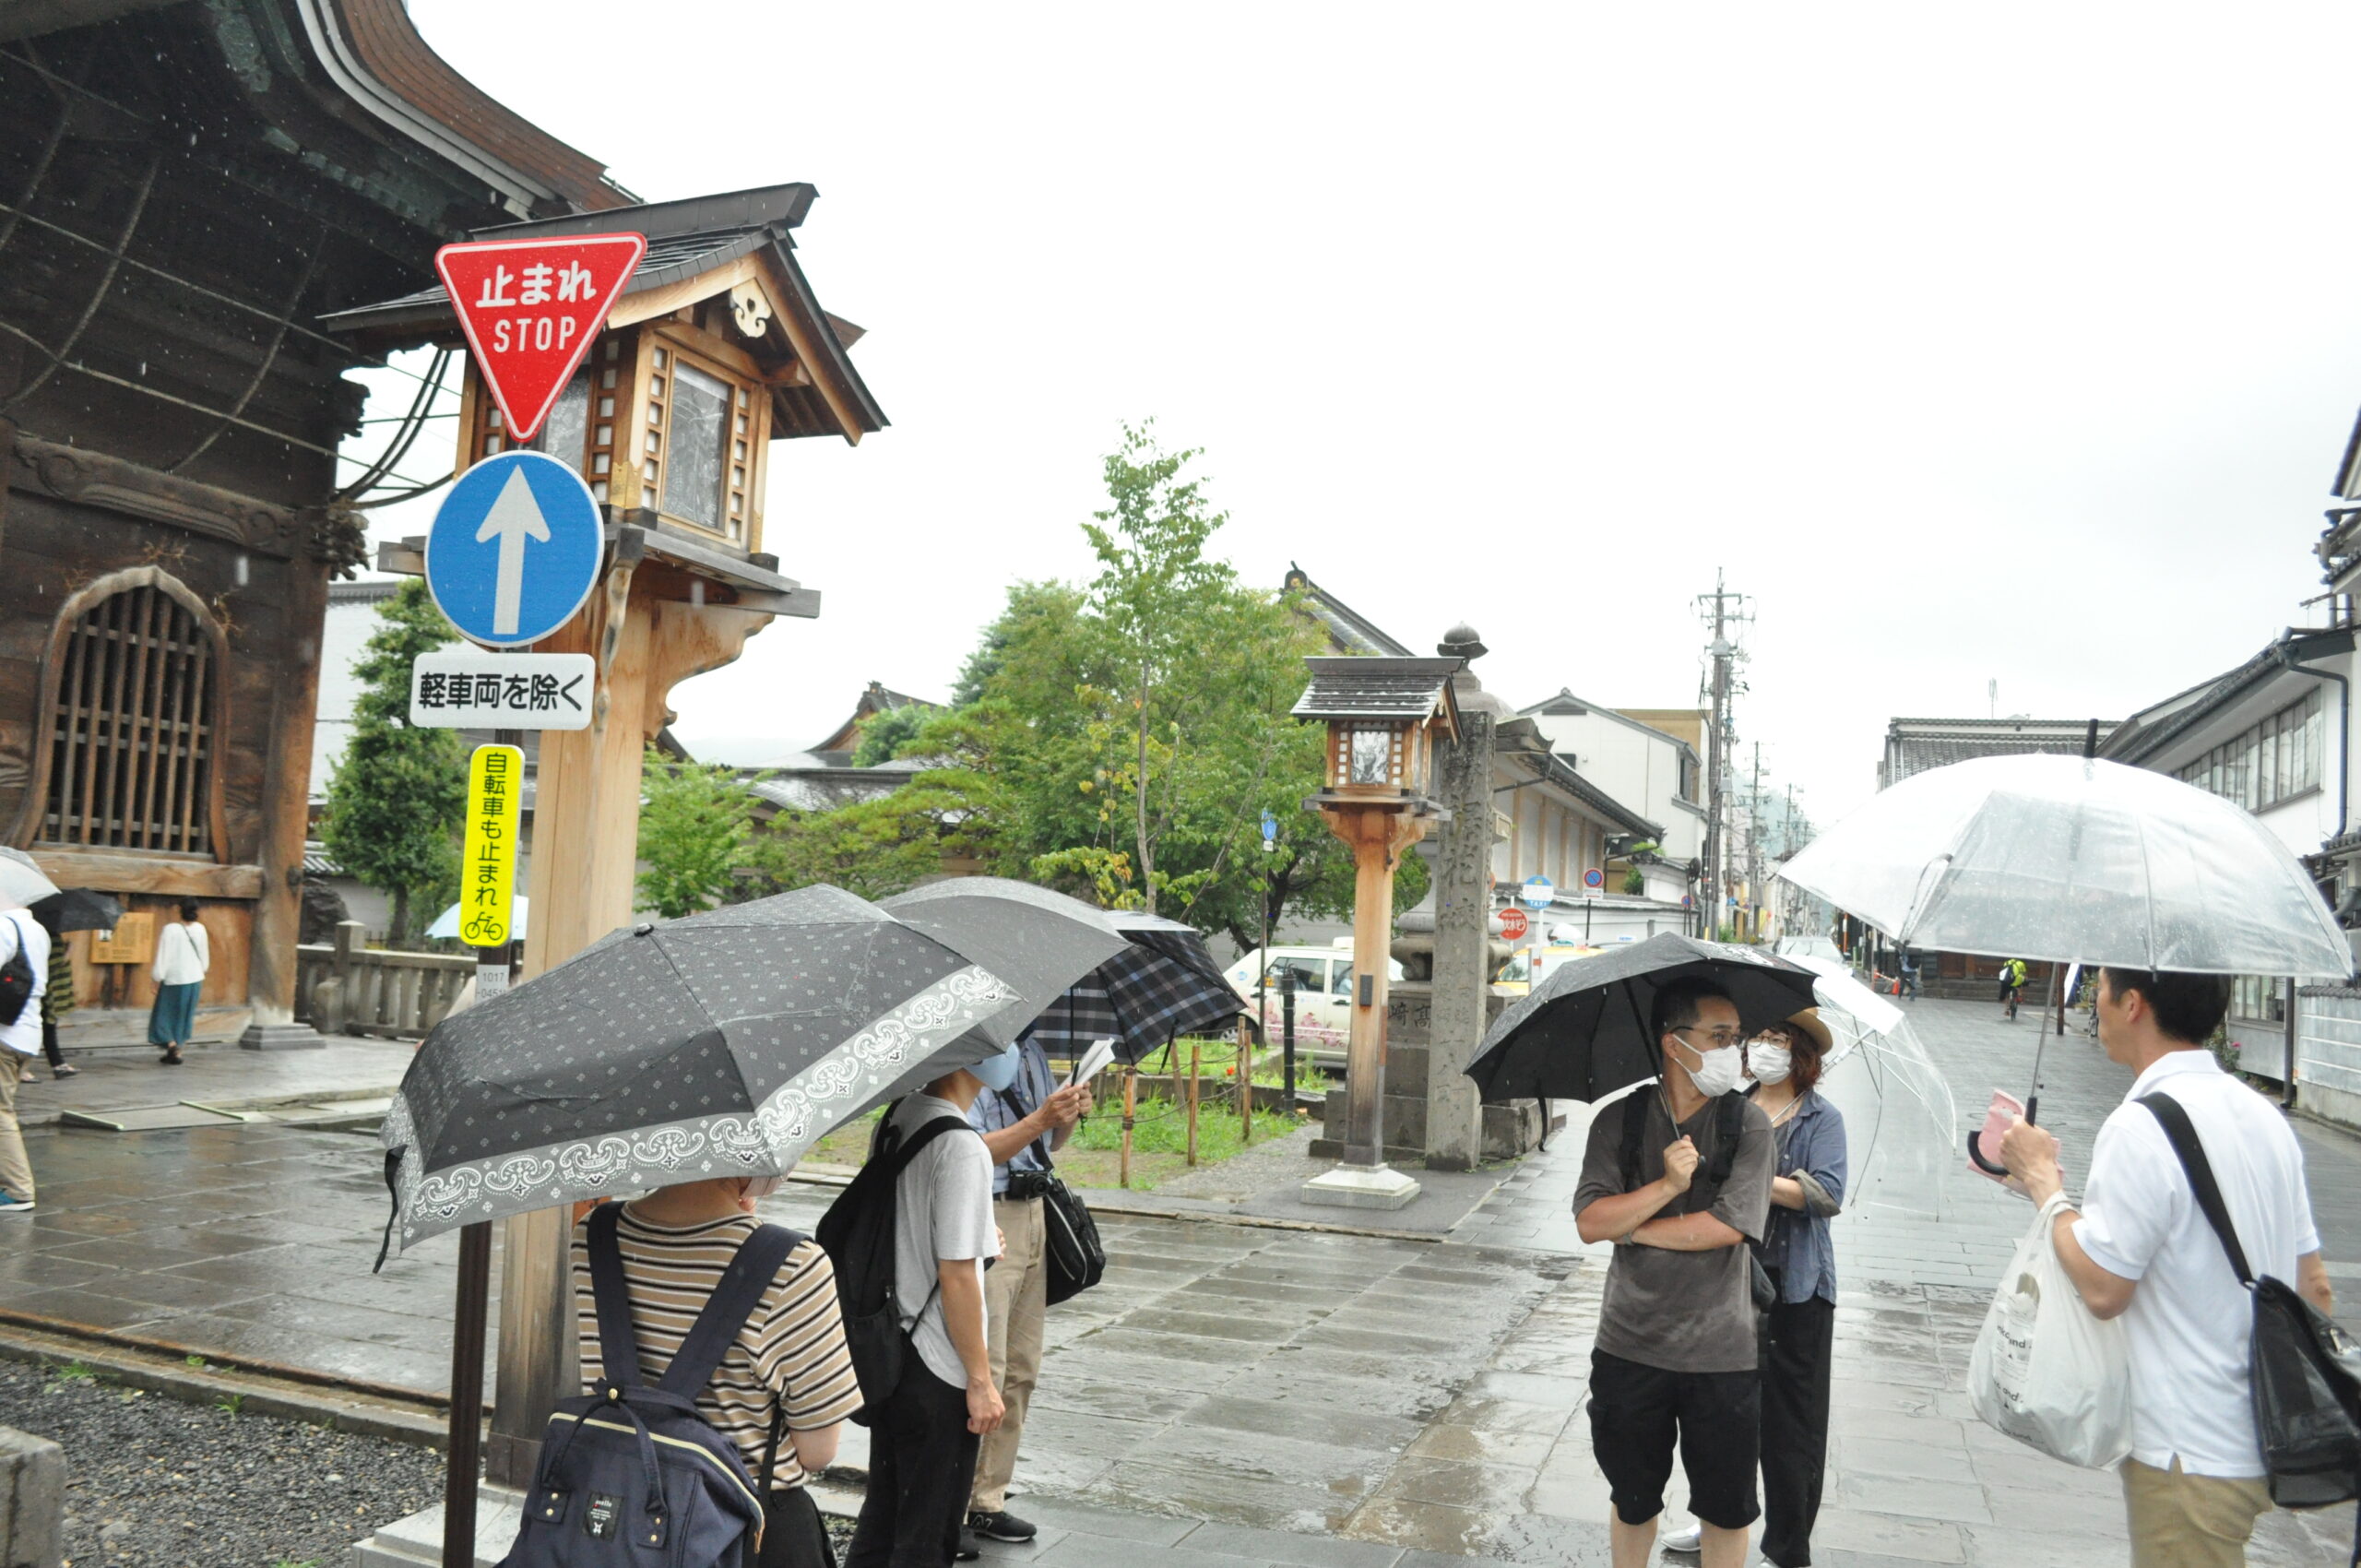 長野市の「門前暮らしのすすめ」空き家見学会に行ってきました。